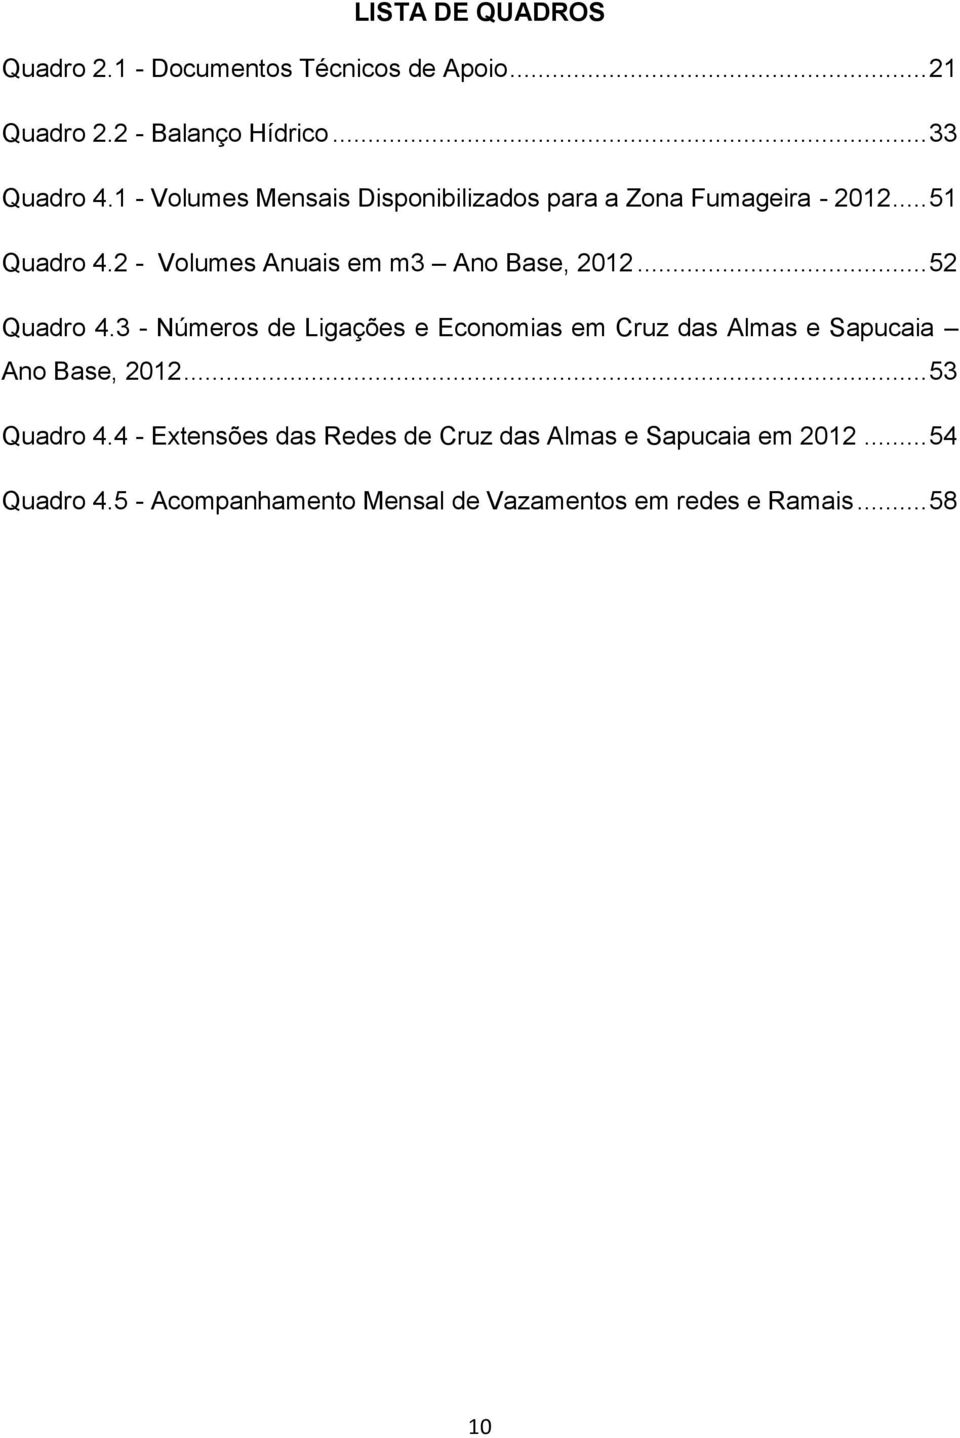 .. 52 Quadro 4.3 - Números de Ligações e Economias em Cruz das Almas e Sapucaia Ano Base, 2012... 53 Quadro 4.